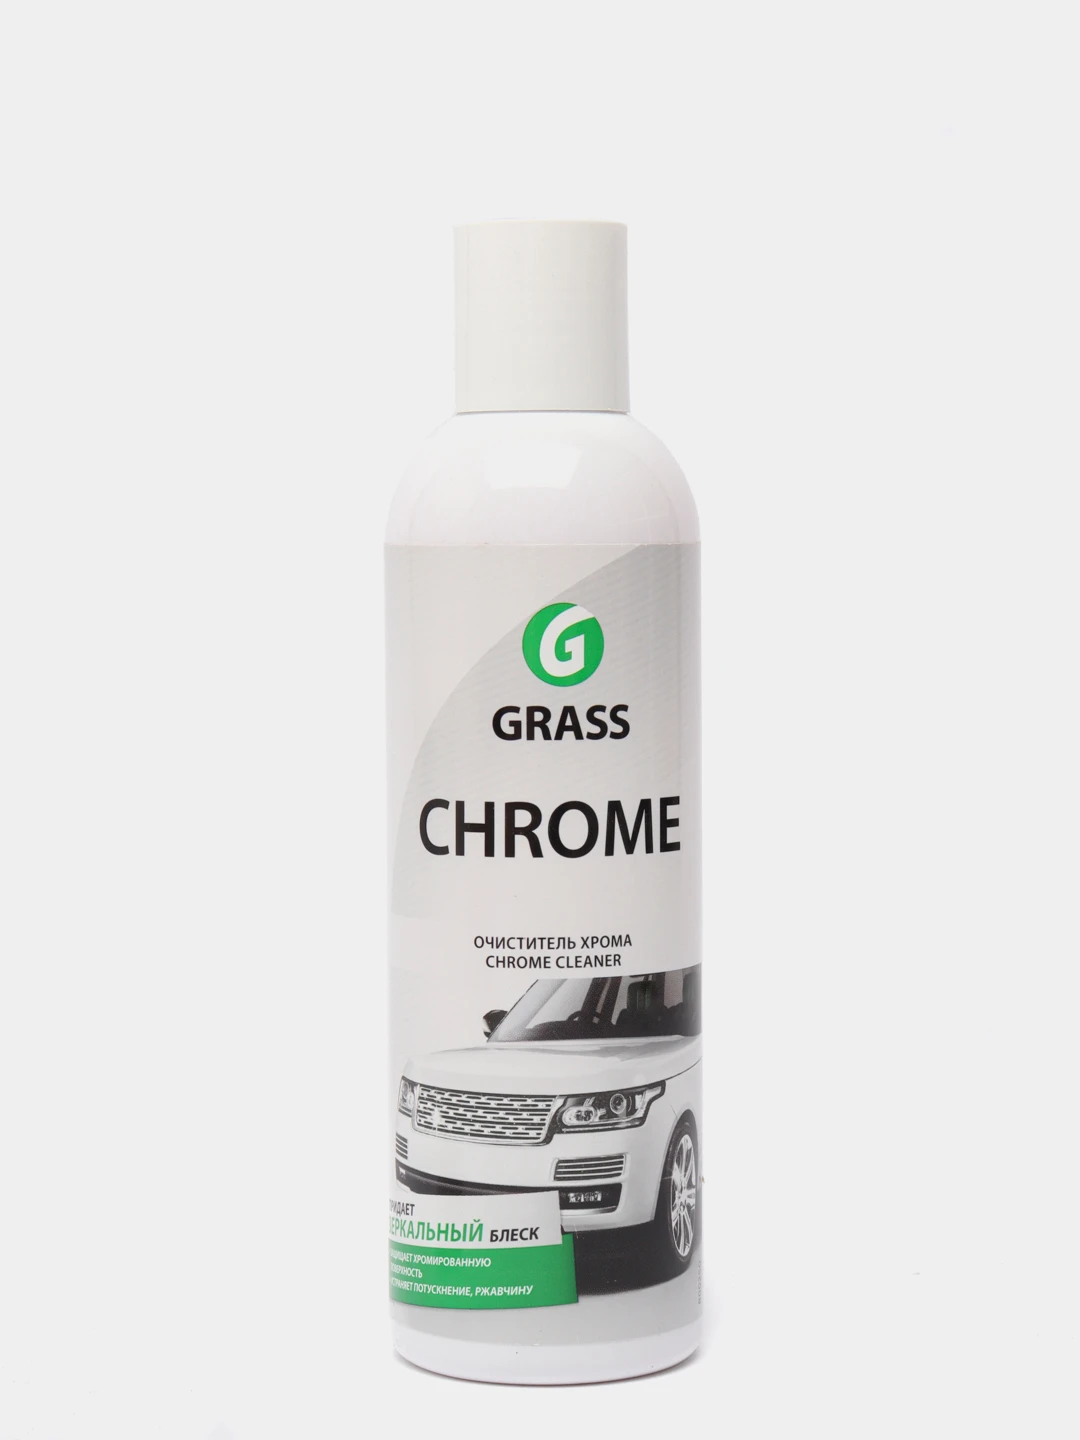 Grass chrome